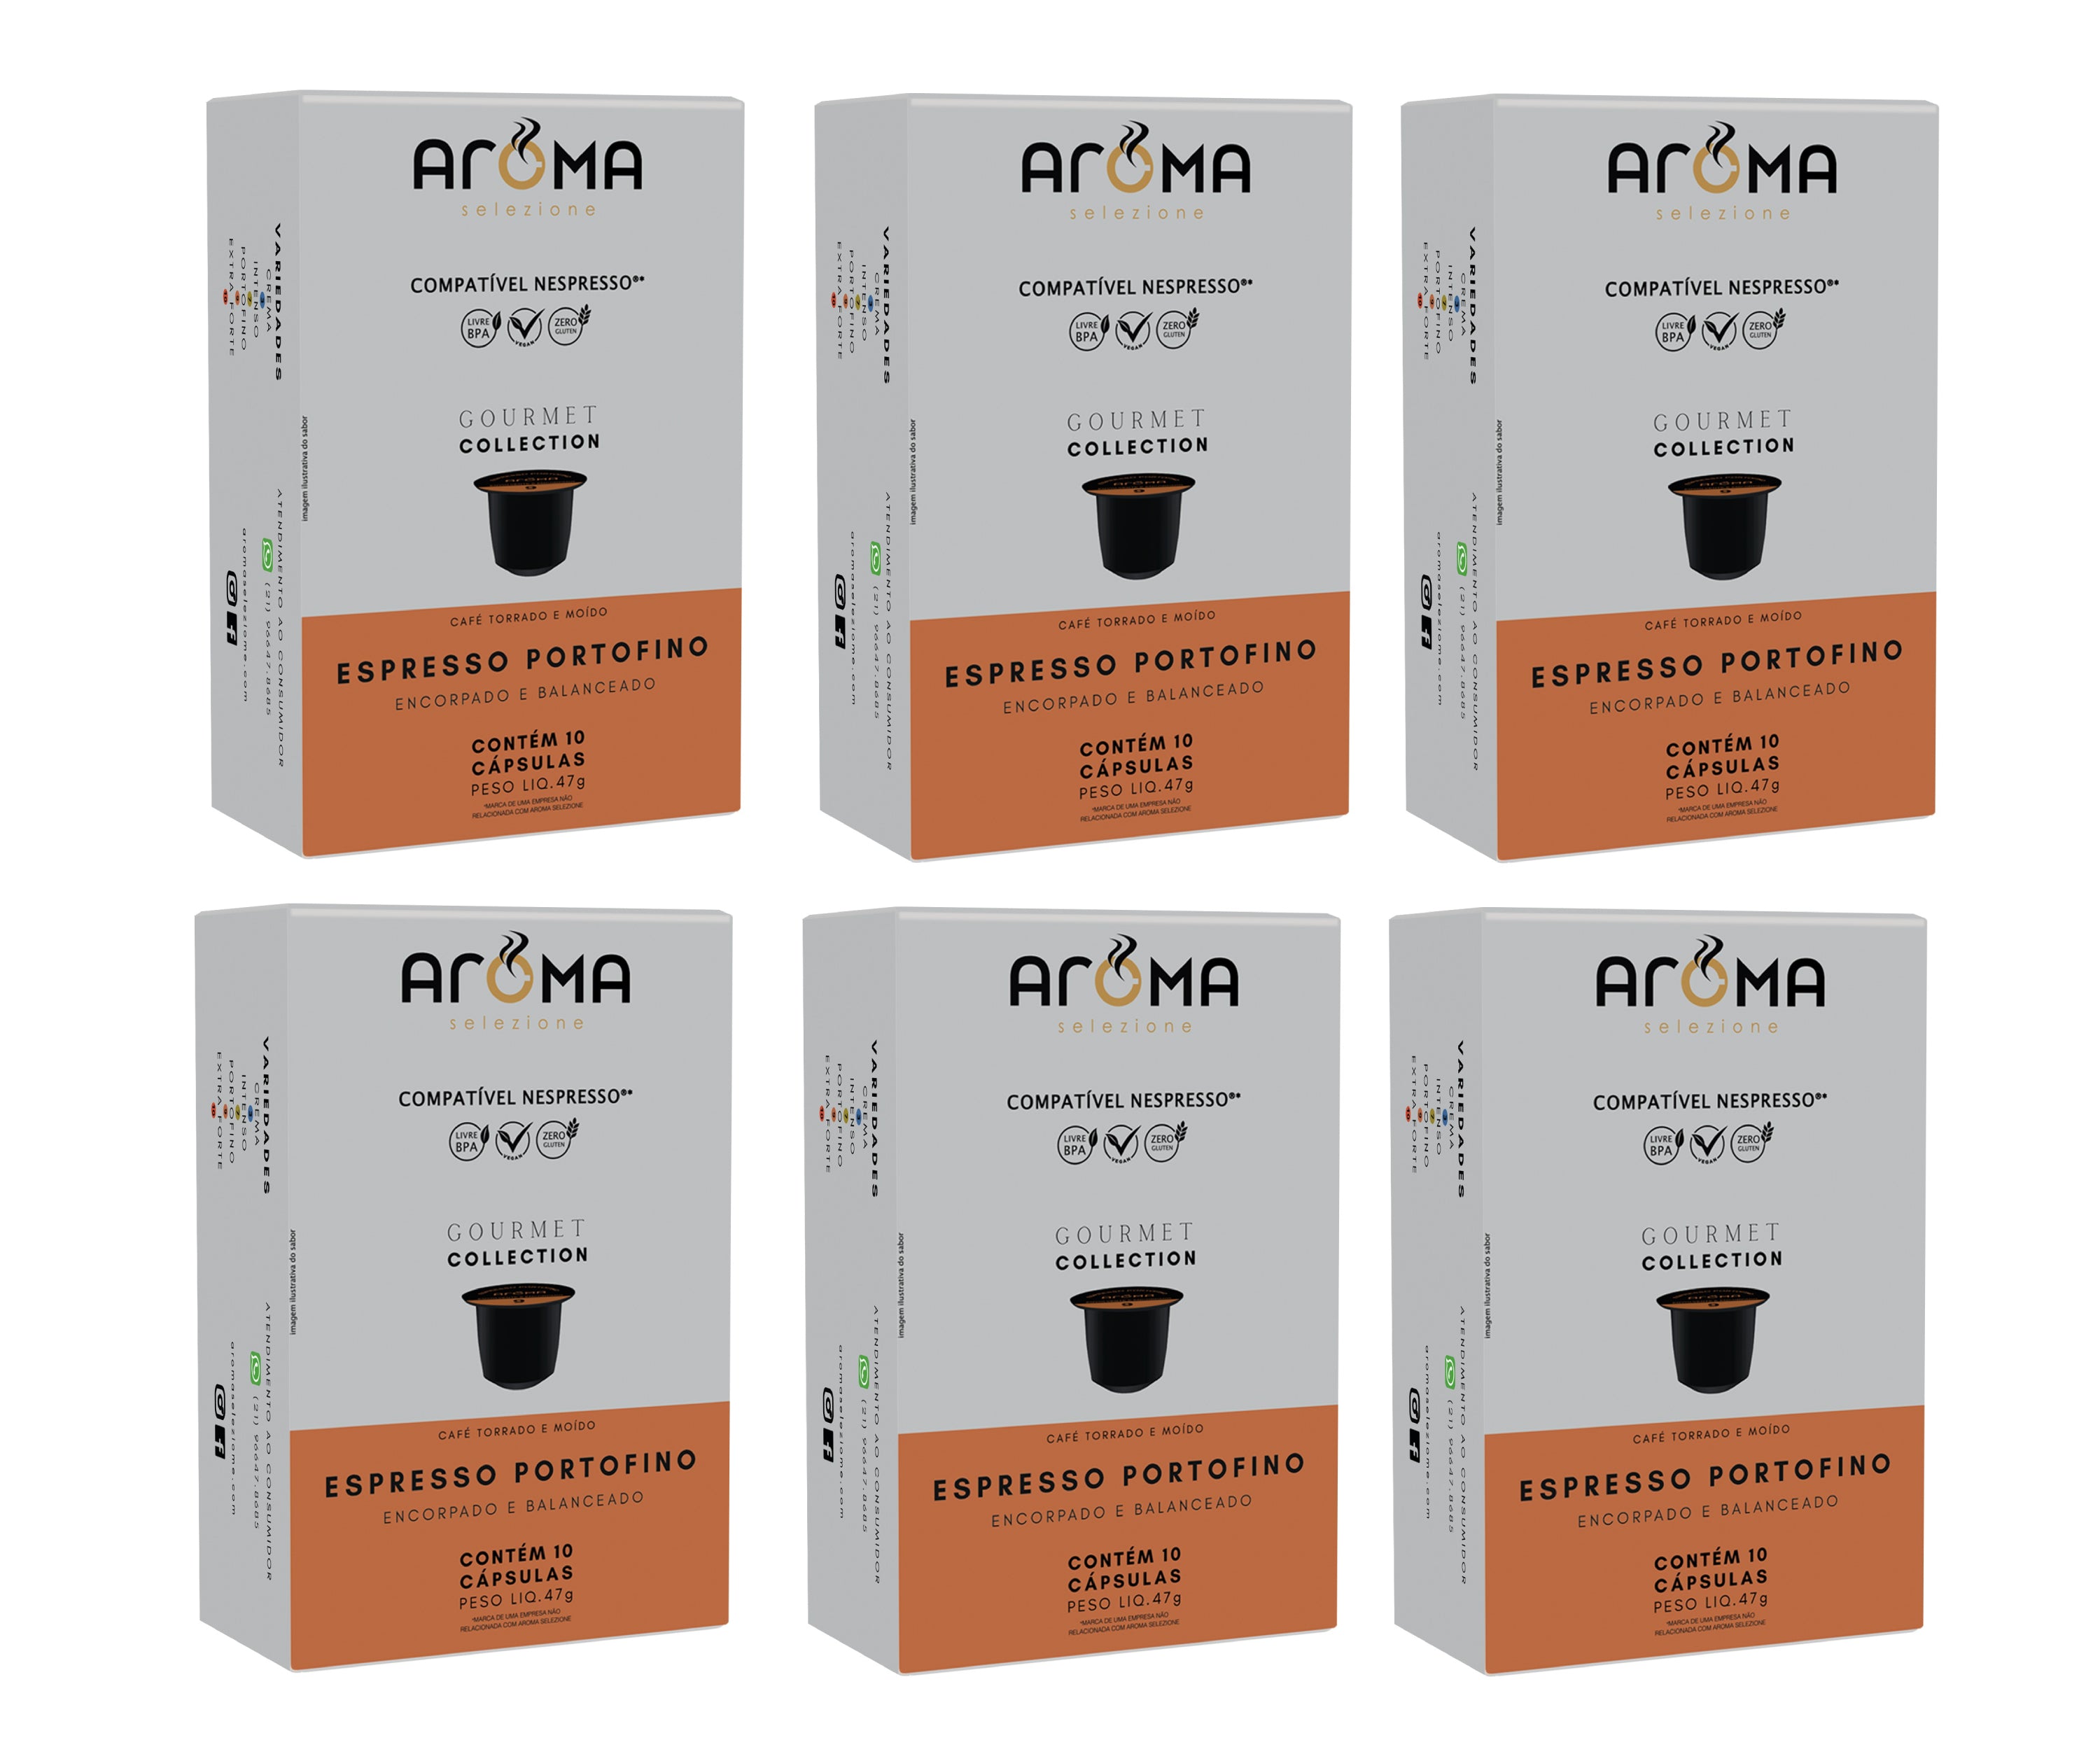 Kit Espresso Portofino 60 cápsulas para Nespresso ®*